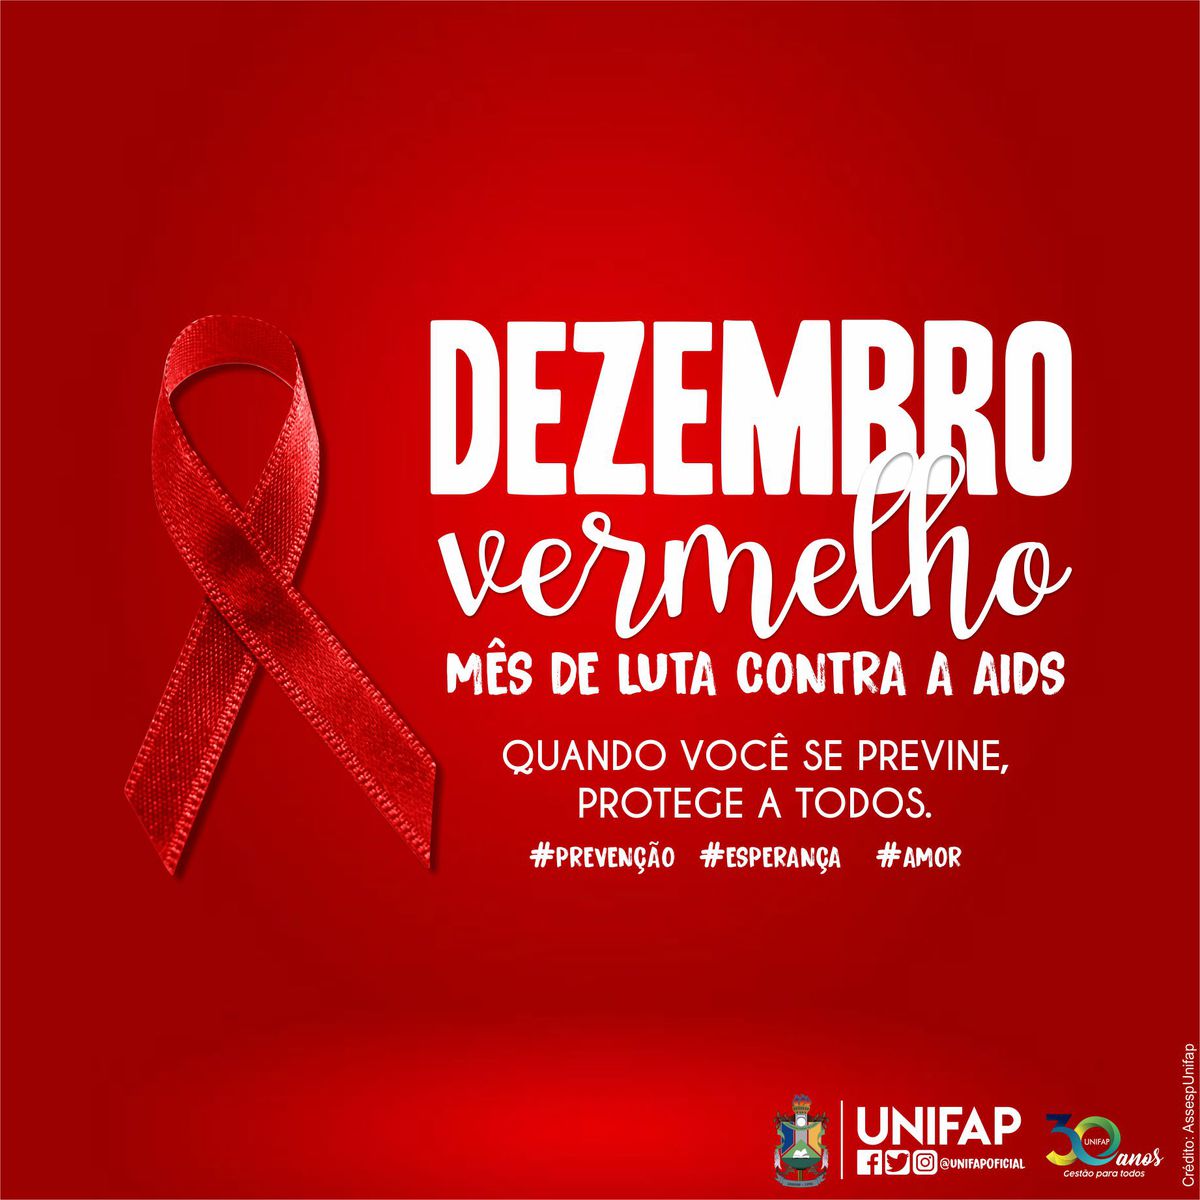 Hoje é o Dia Mundial da Luta Contra AIDS